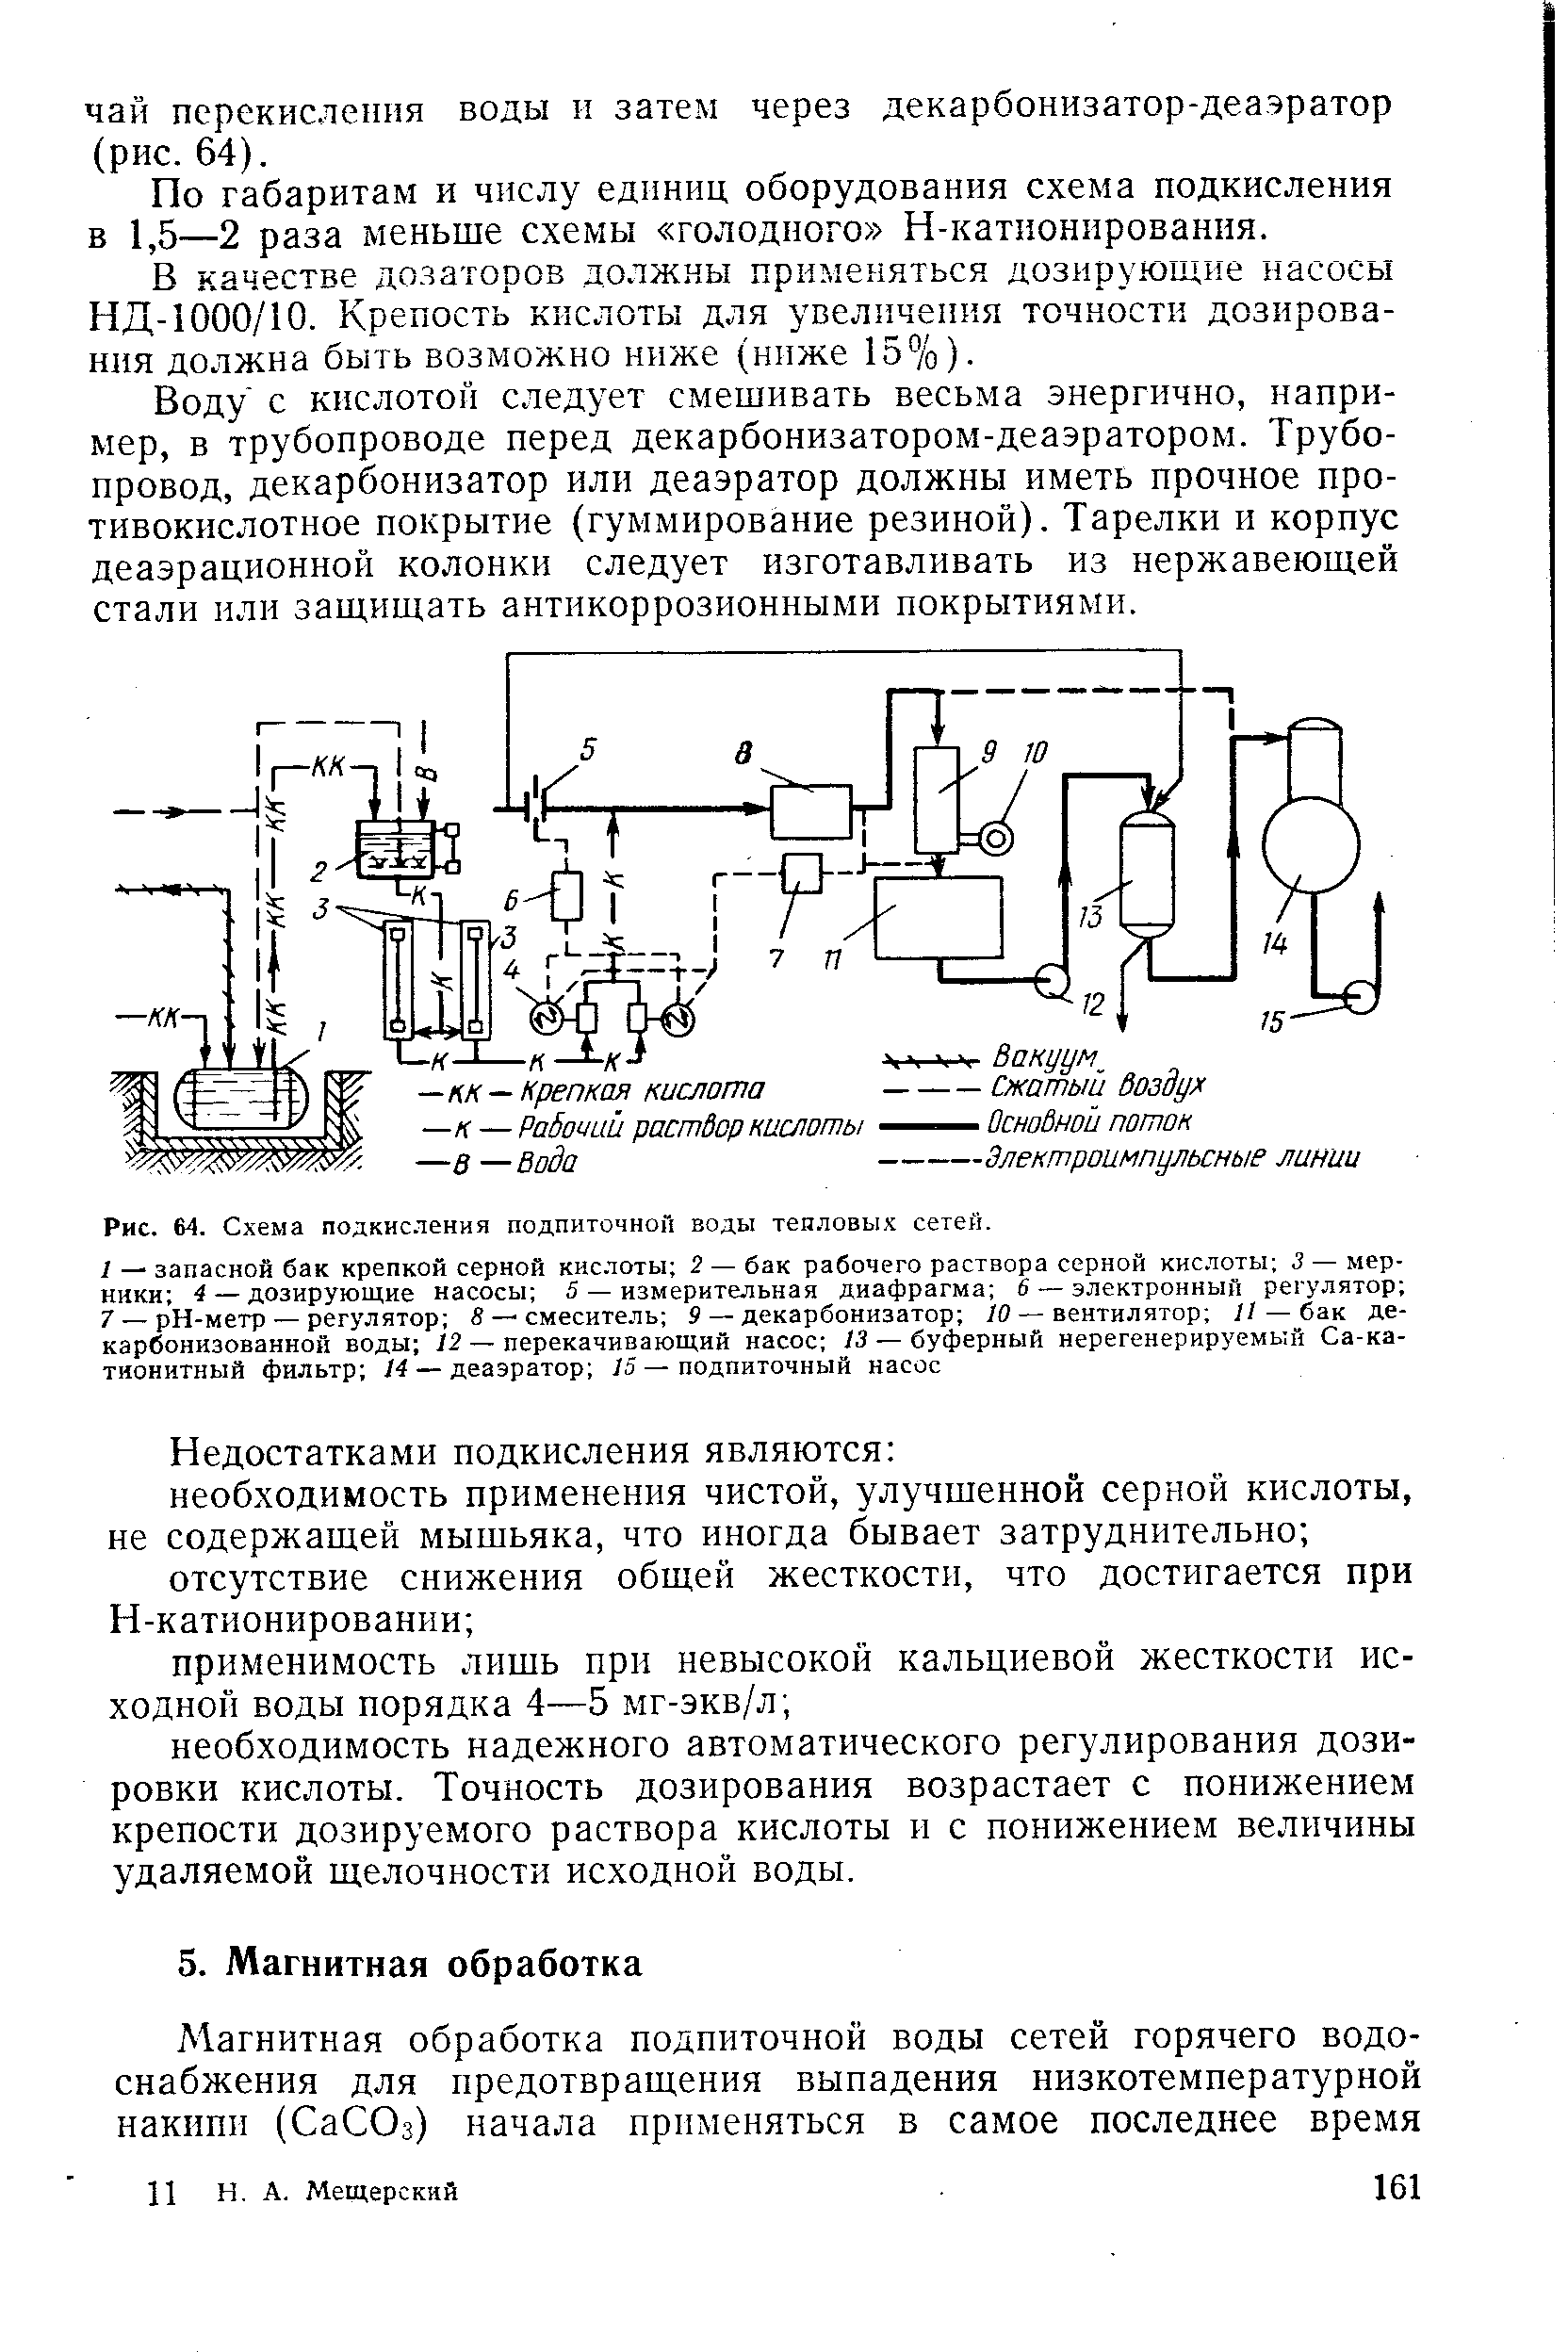 Рис. 64. Схема подкисления подпиточной воды тепловых сетей.
